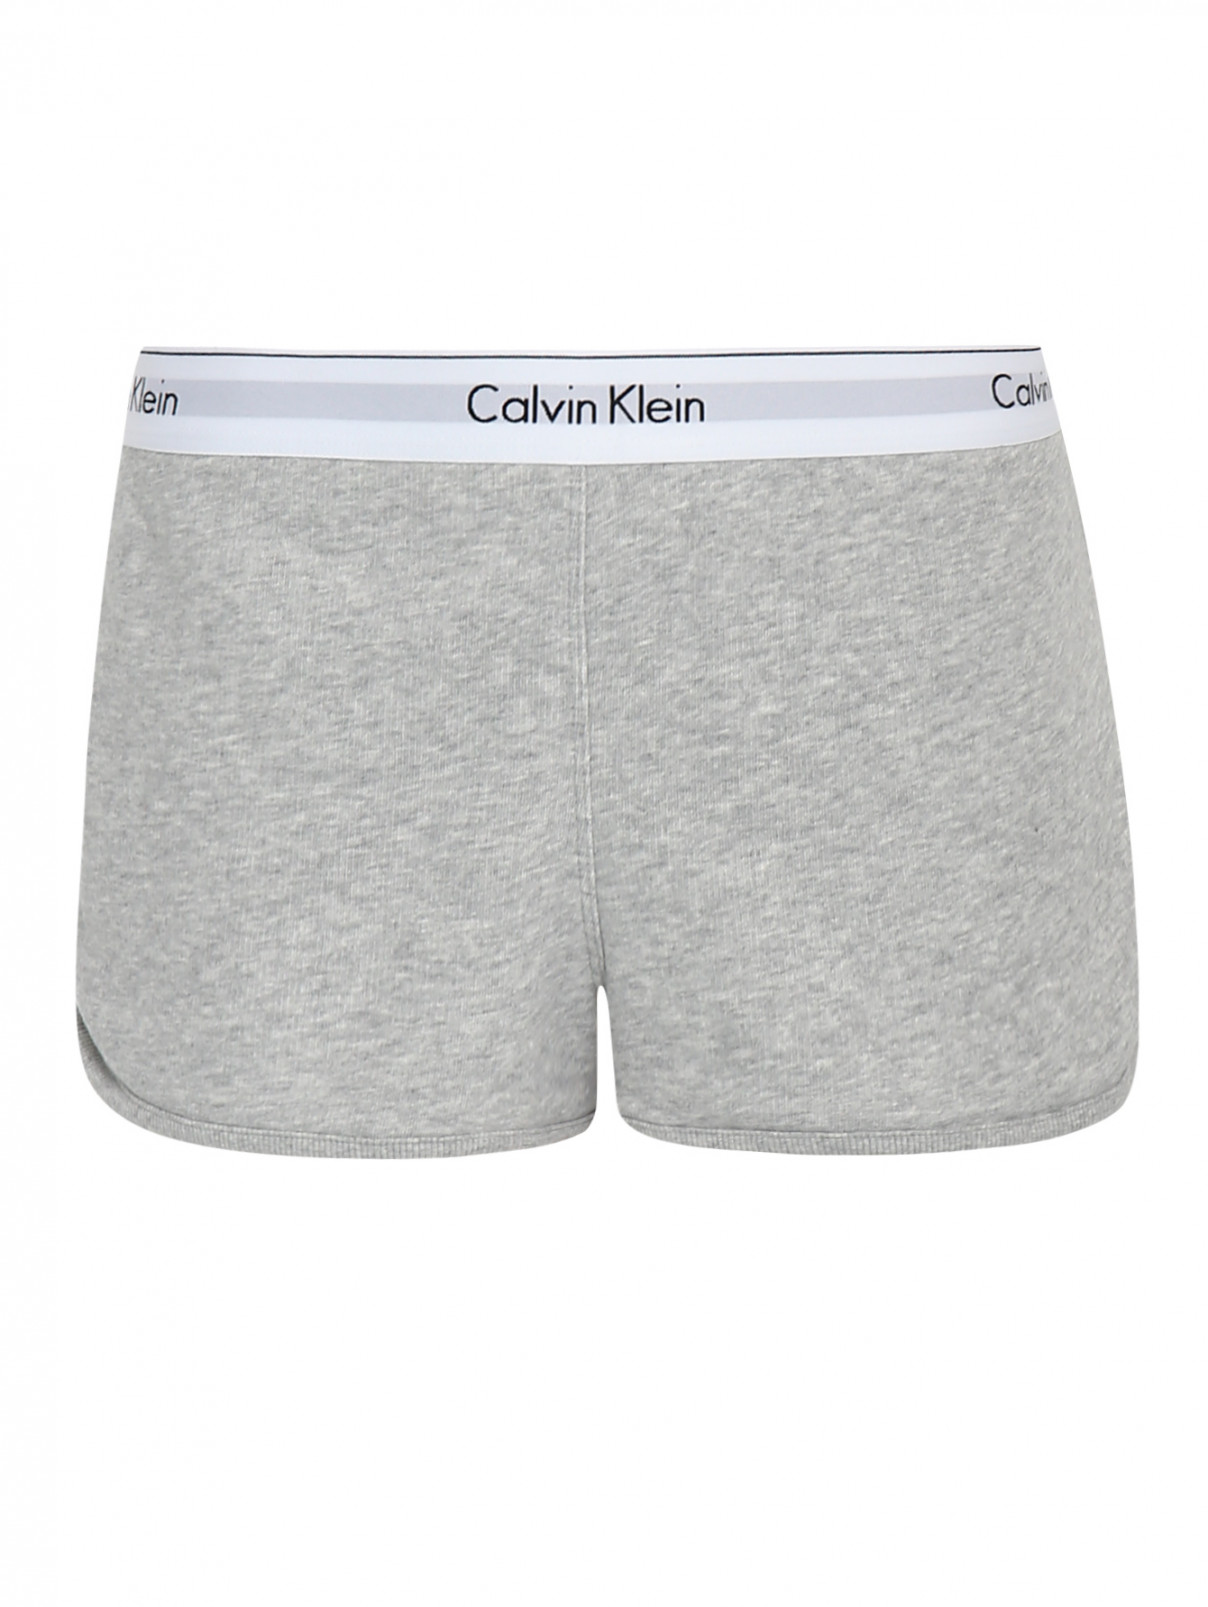 Шорты из хлопка с контрастной отделкой Calvin Klein  –  Общий вид  – Цвет:  Серый